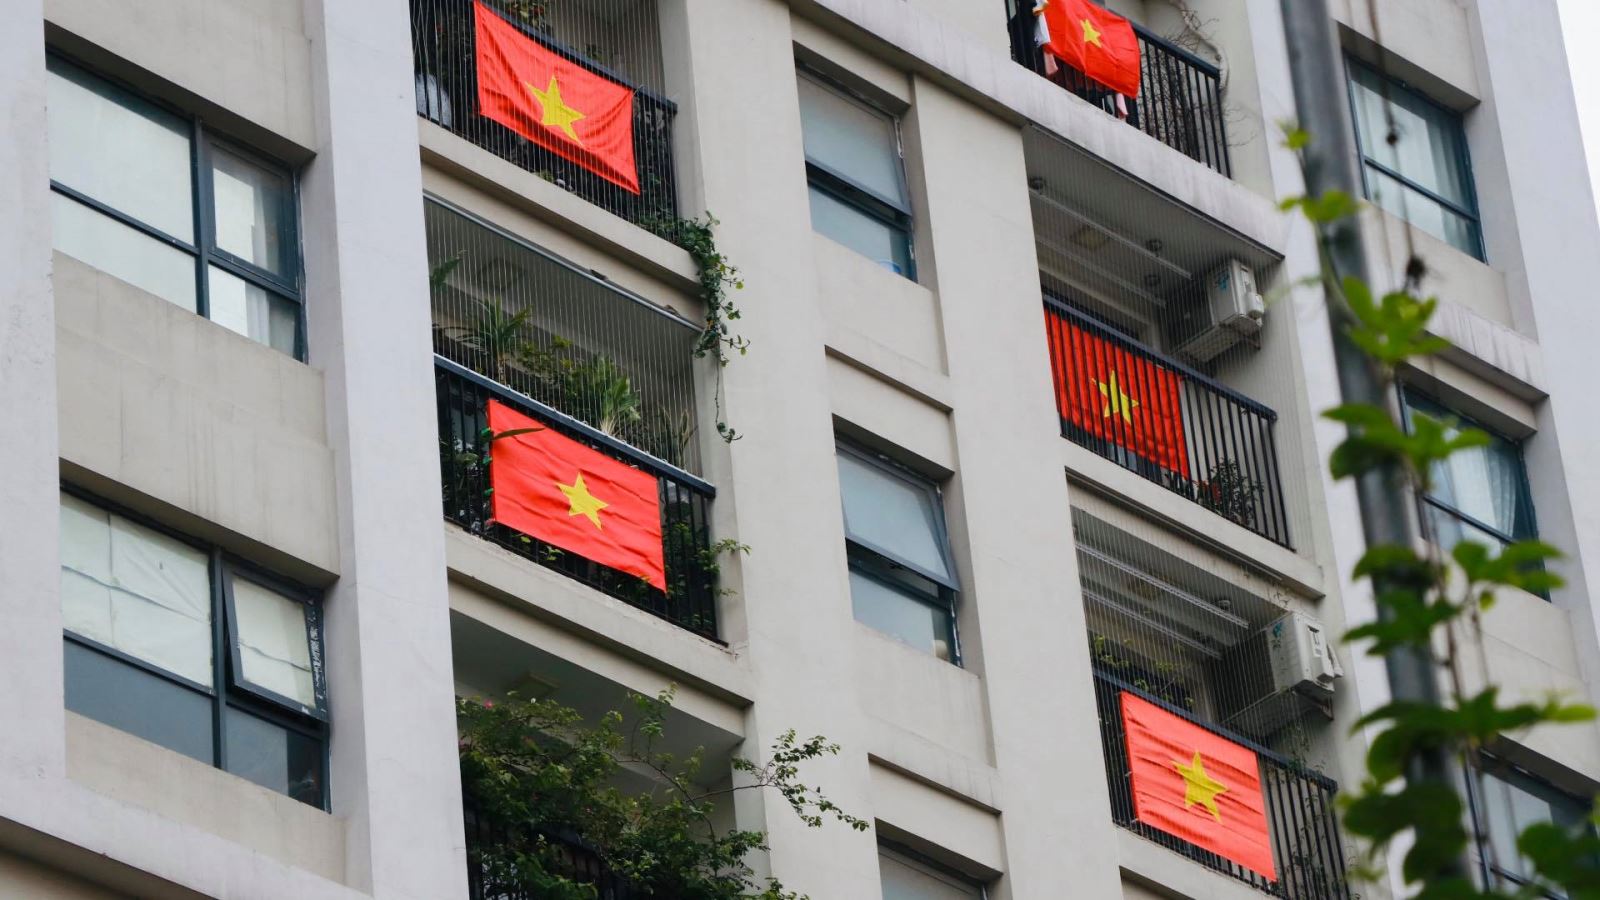 Cờ đỏ: Cờ đỏ - biểu tượng của sự nhiệt huyết, sức mạnh và độc lập. Để tự hào về lá cờ cũng như đất nước Việt Nam, chúng ta cần tôn trọng và bảo vệ cờ đỏ tình yêu quý của tổ quốc. Hãy để tâm hồn mình bay cao cùng cờ đỏ.